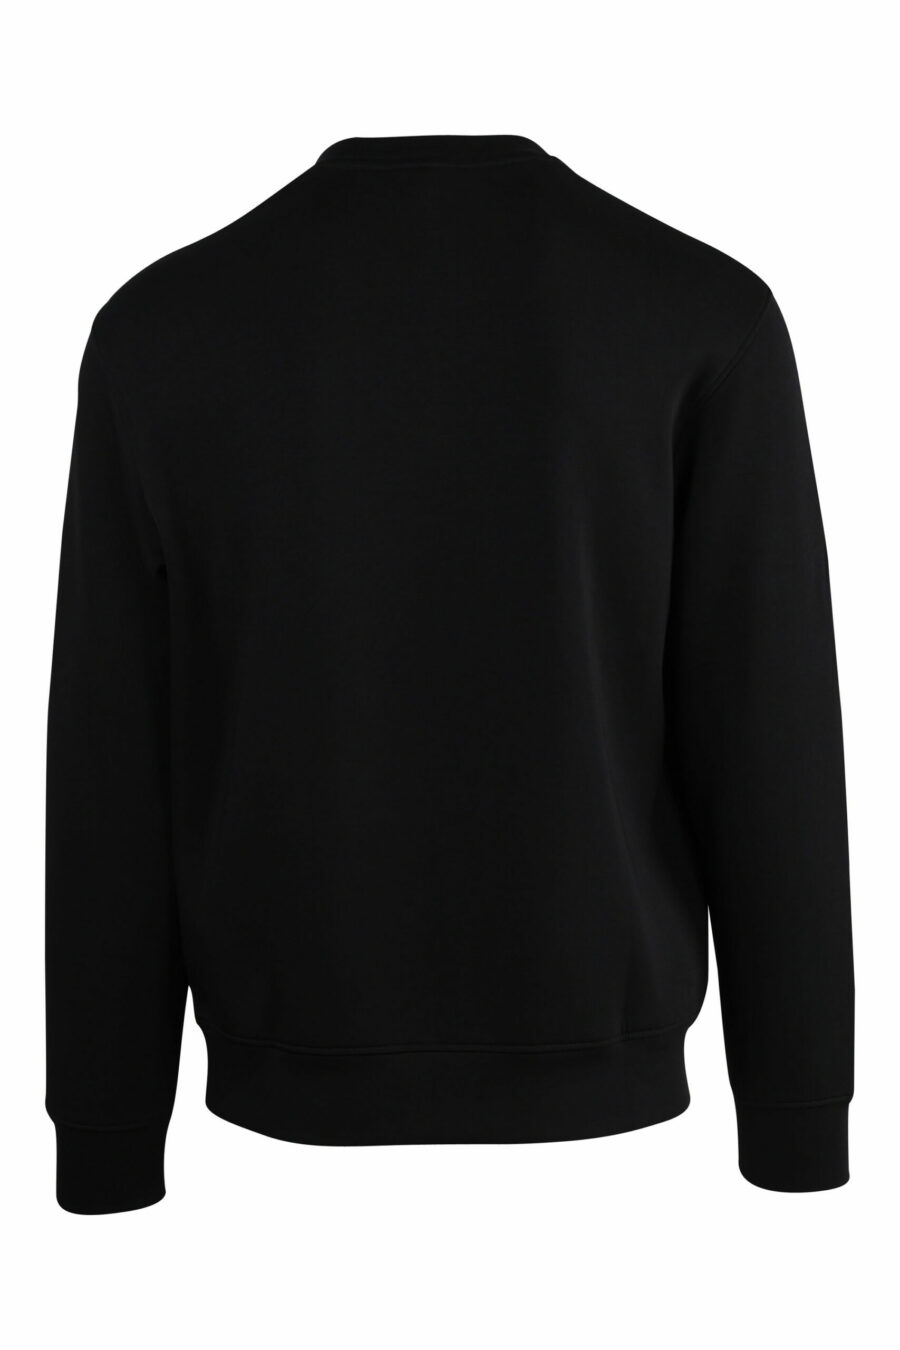 Schwarzes Sweatshirt mit Adler-Maxilogo - 8057767552367 skaliert